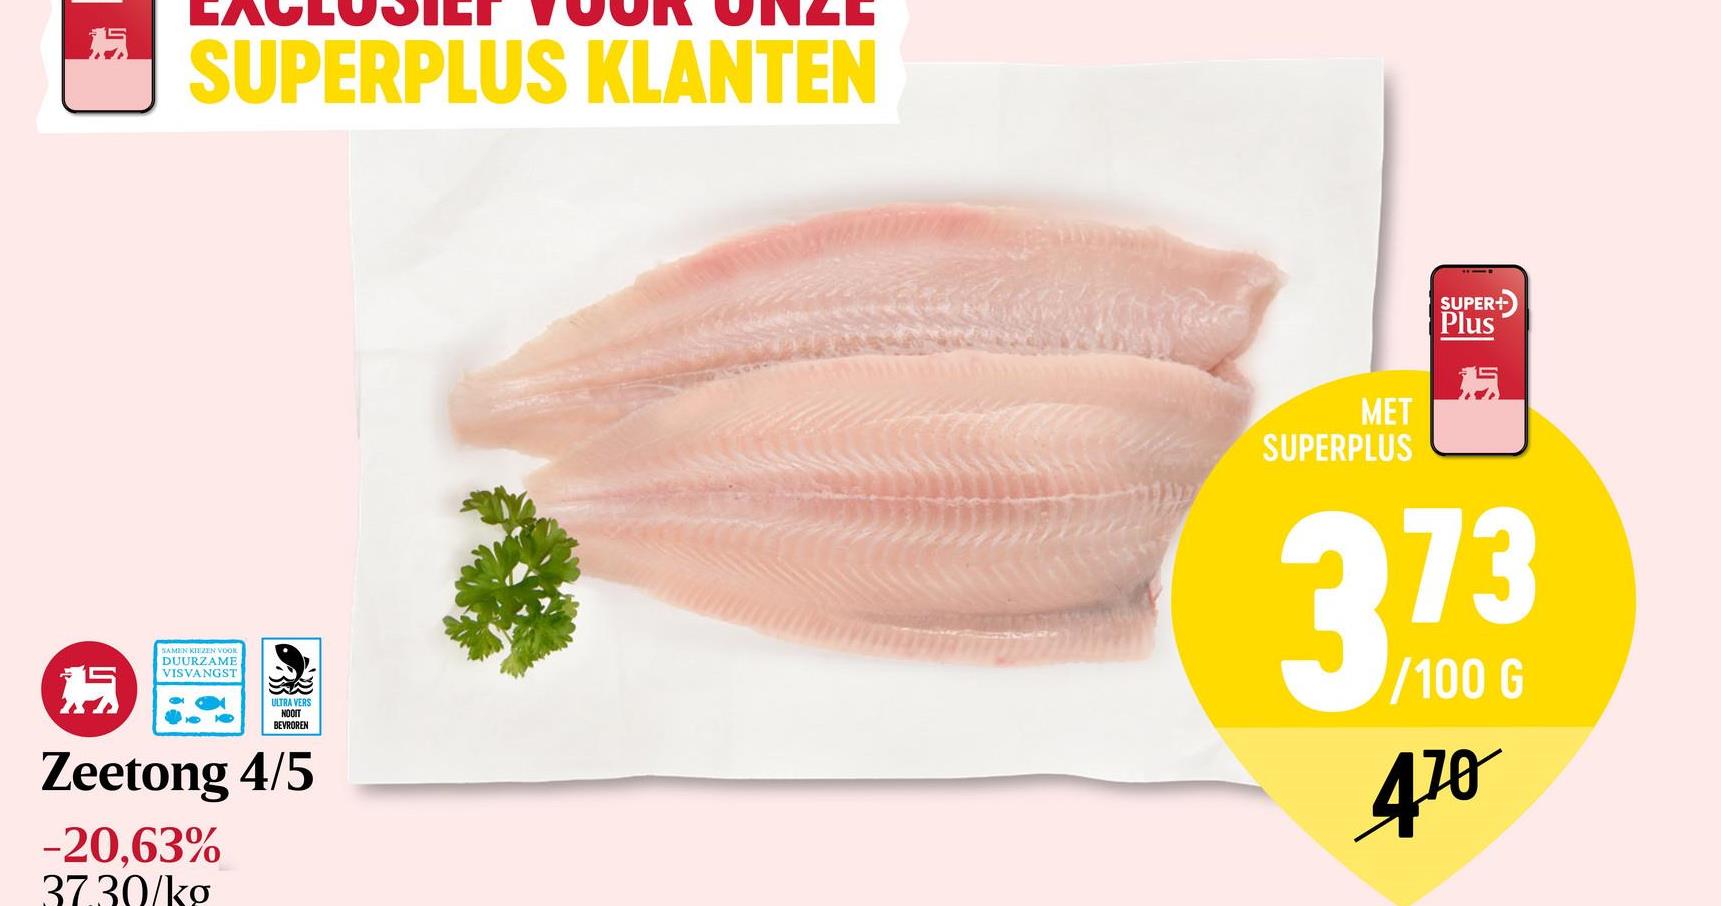 Tong | Noordzee PlatvissenHaar vlees is wit, stevig en smakelijk.Gevangen in de Noordzee